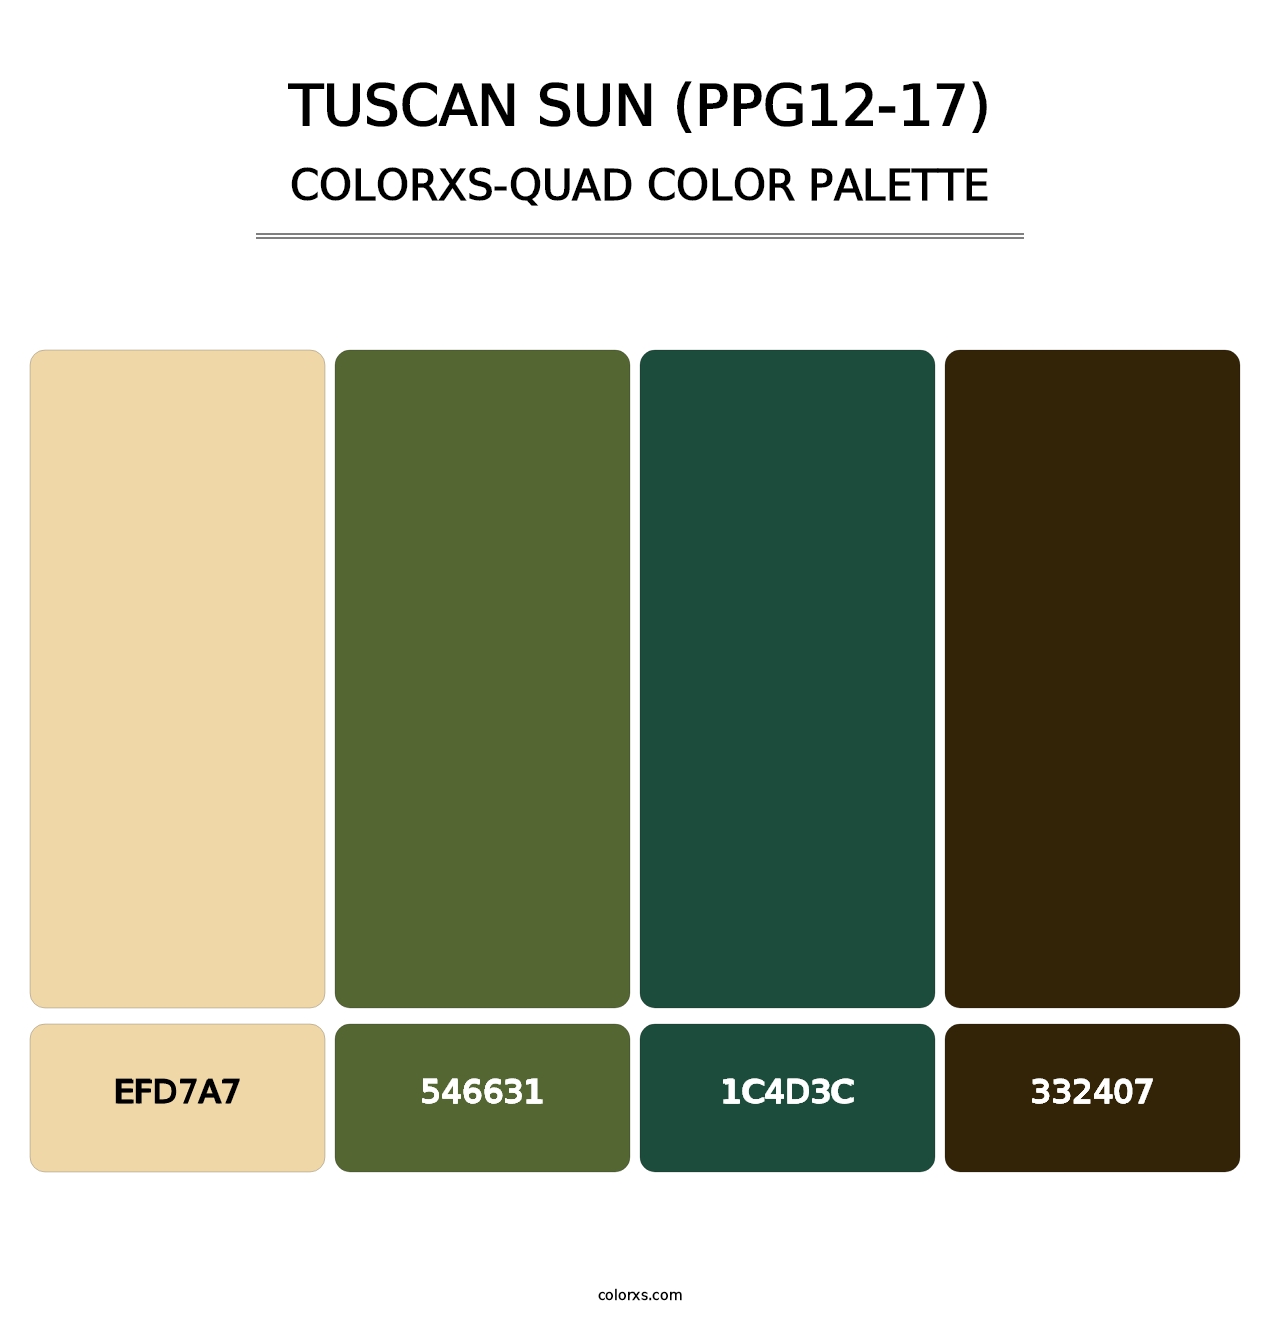 Tuscan Sun (PPG12-17) - Colorxs Quad Palette